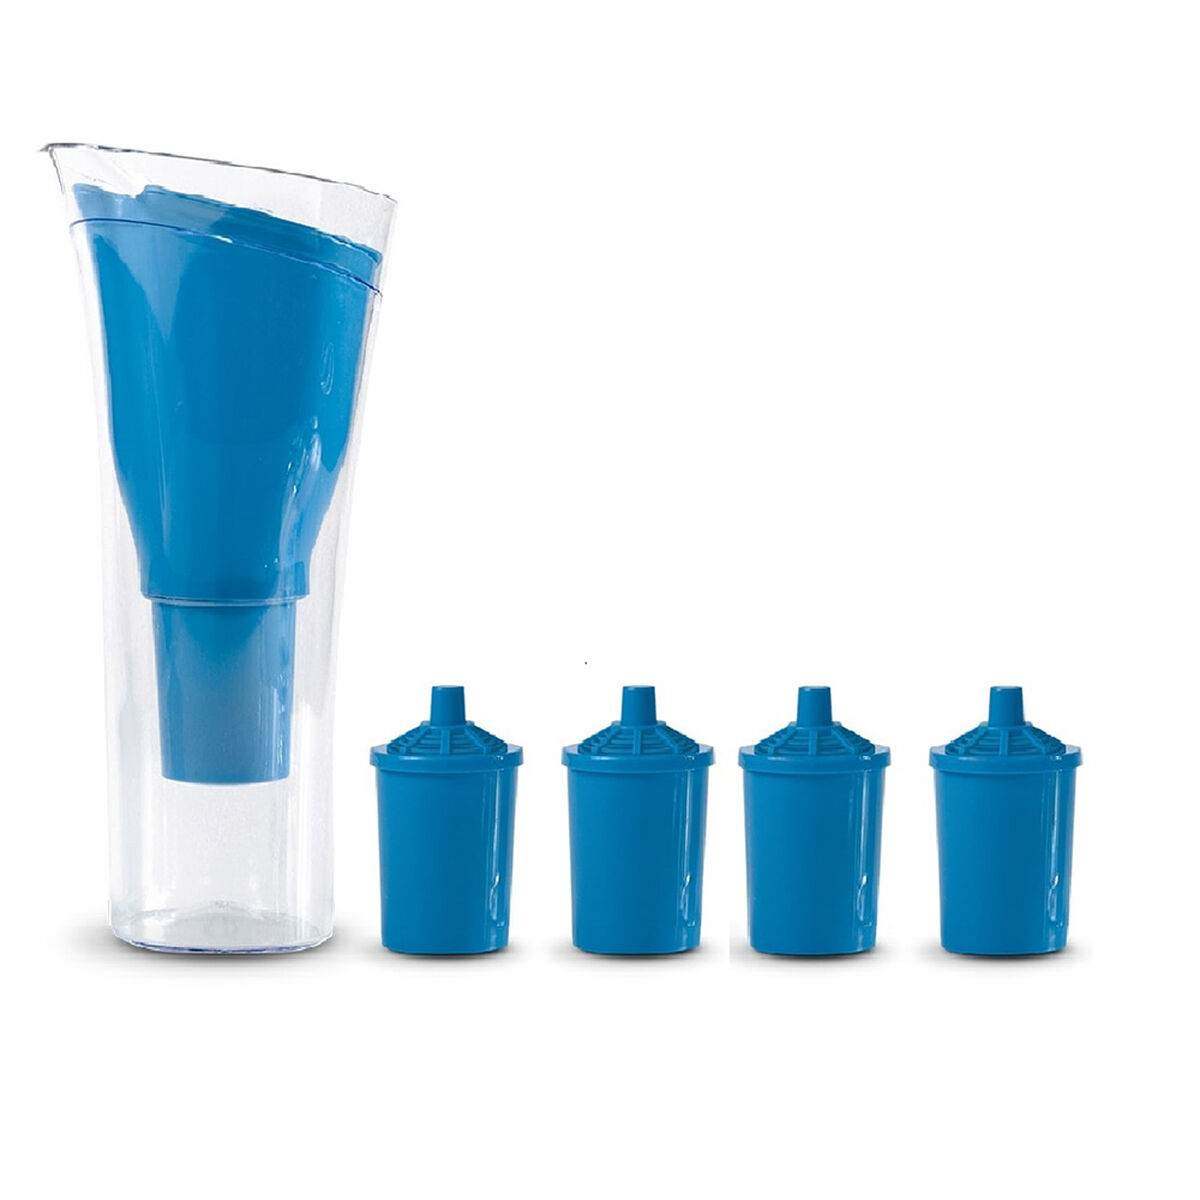 Jarro Purificador de Agua + 4 Repuestos de Filtro Dvigi Azul